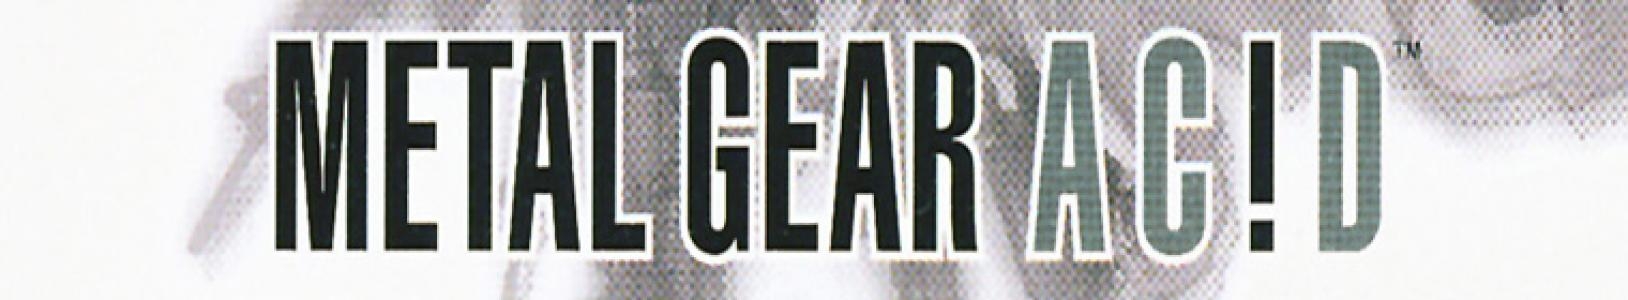 METAL GEAR AC!D banner